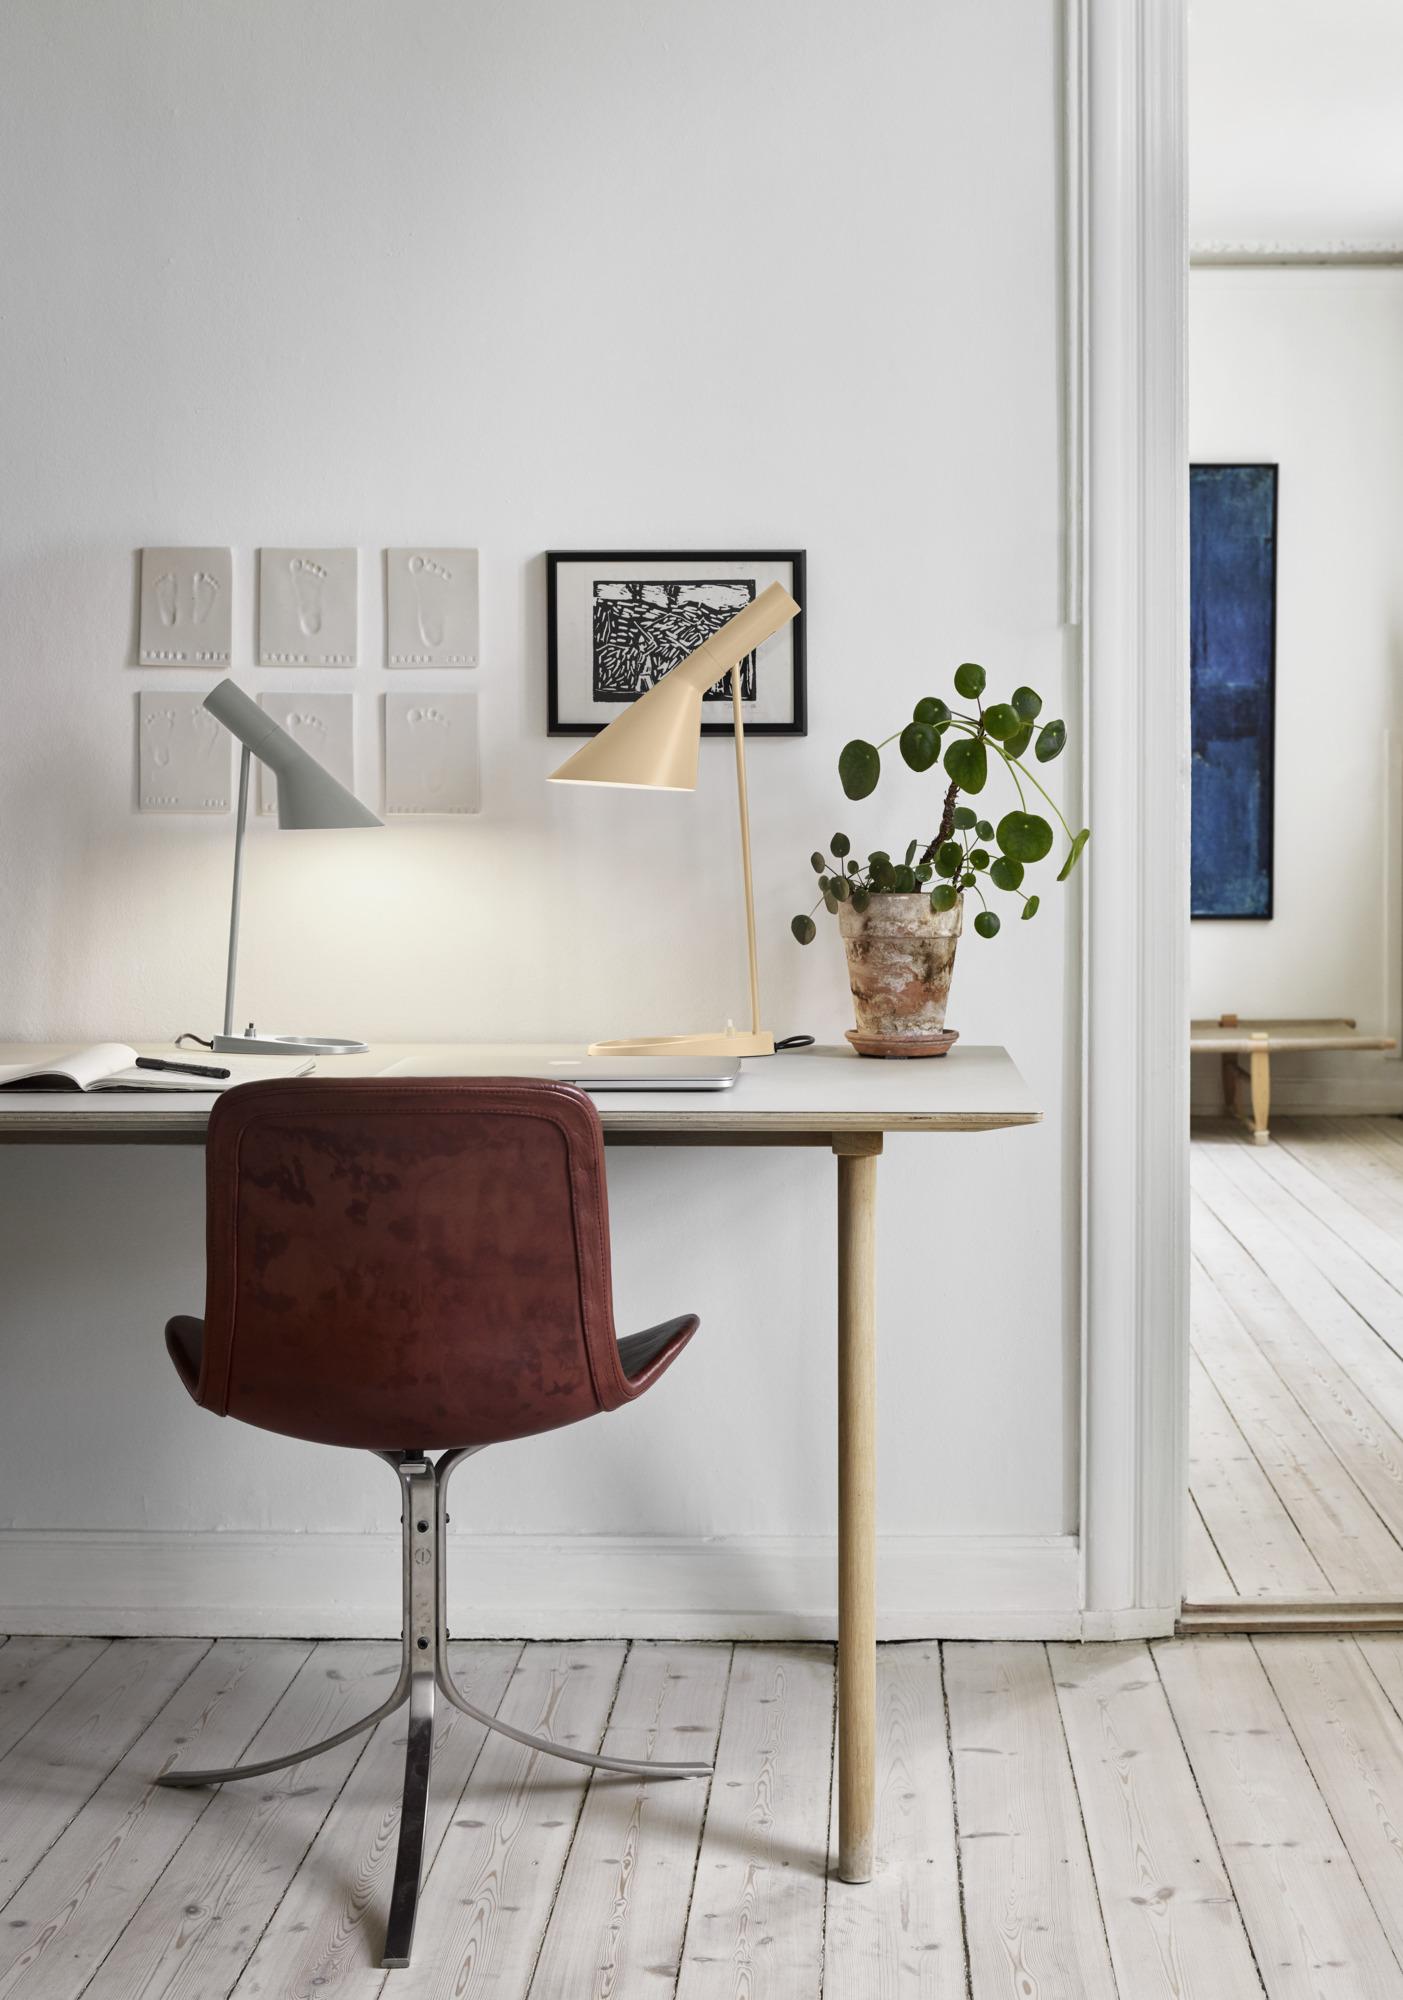 Mini-lampe de table AJ d'Arne Jacobsen en gris chaud pour Louis Poulsen.

La série AJ faisait partie de la collection de luminaires que le célèbre designer danois Arne Jacobsen a créée pour le premier hôtel SAS Royal en 1957. Aujourd'hui, ses